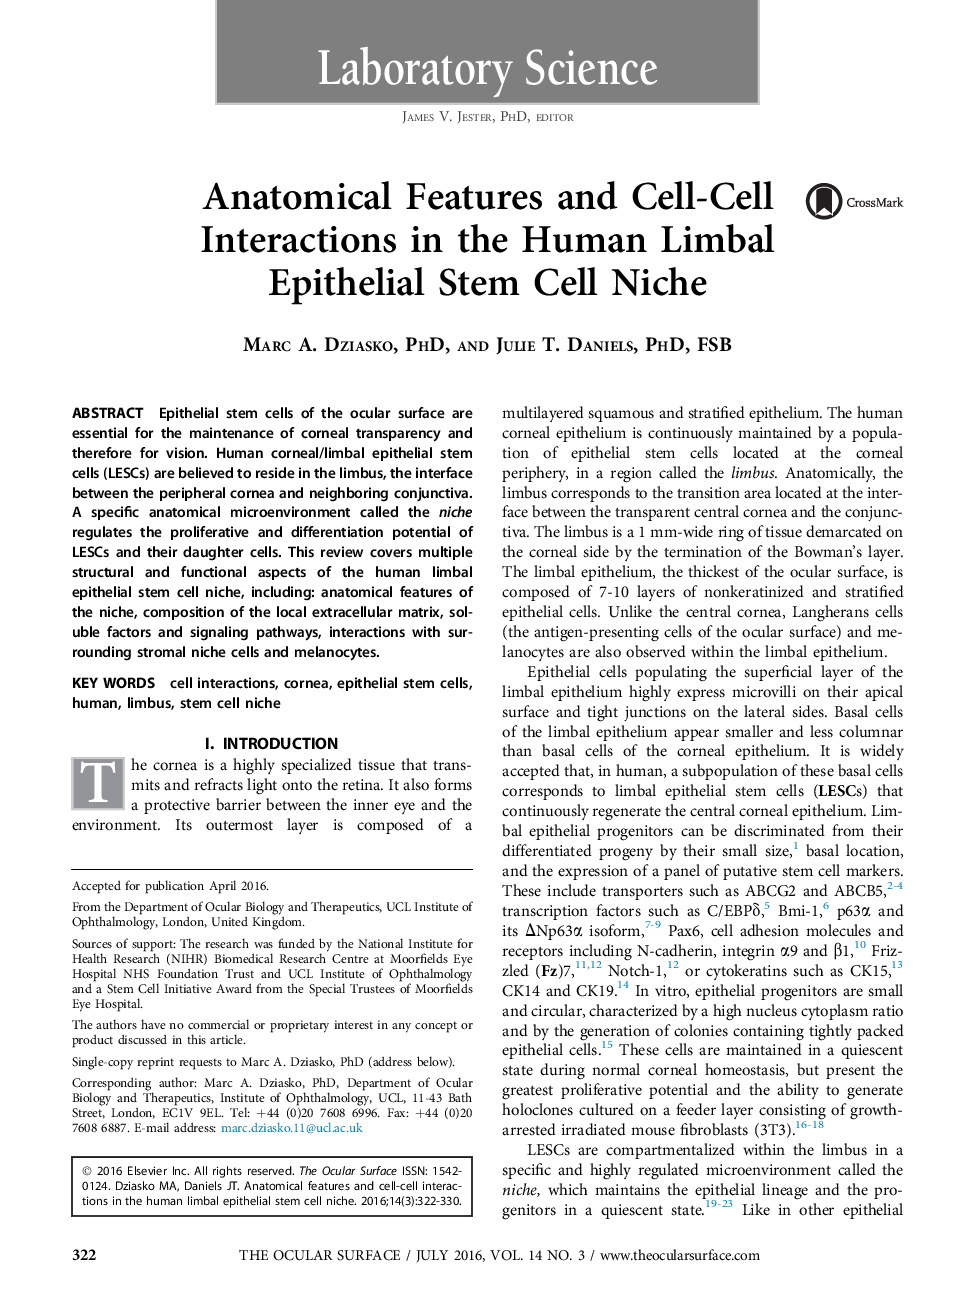 ویژگی های تشریحی و تعاملات سلول ـ سلول در جایگاه سلول بنیادی اپیتلیال لیمبال انسانی 